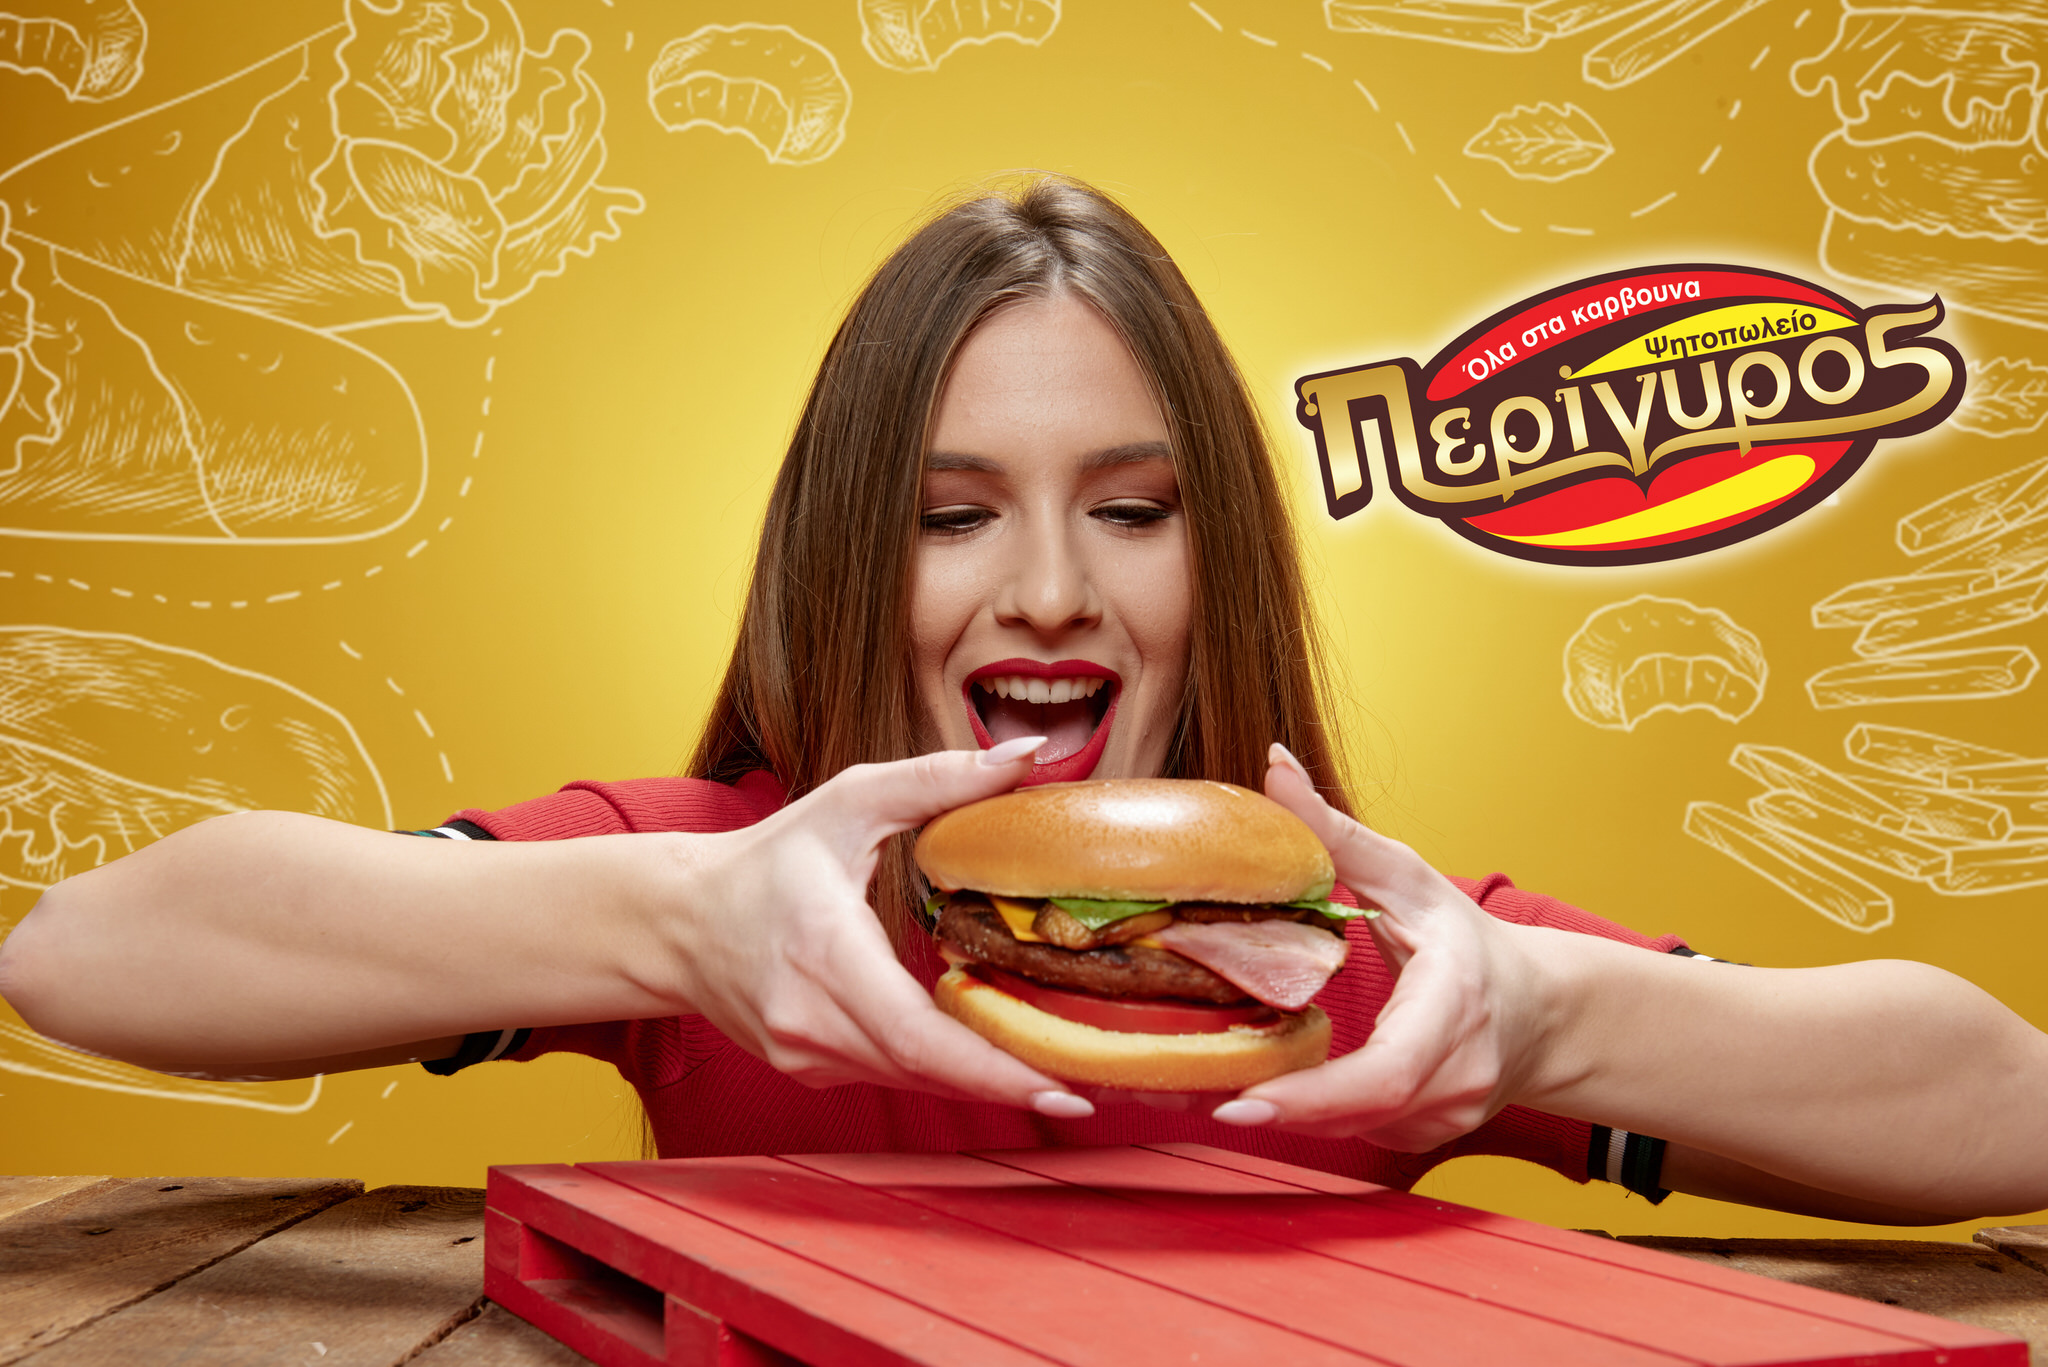 Perigyros Burger poster